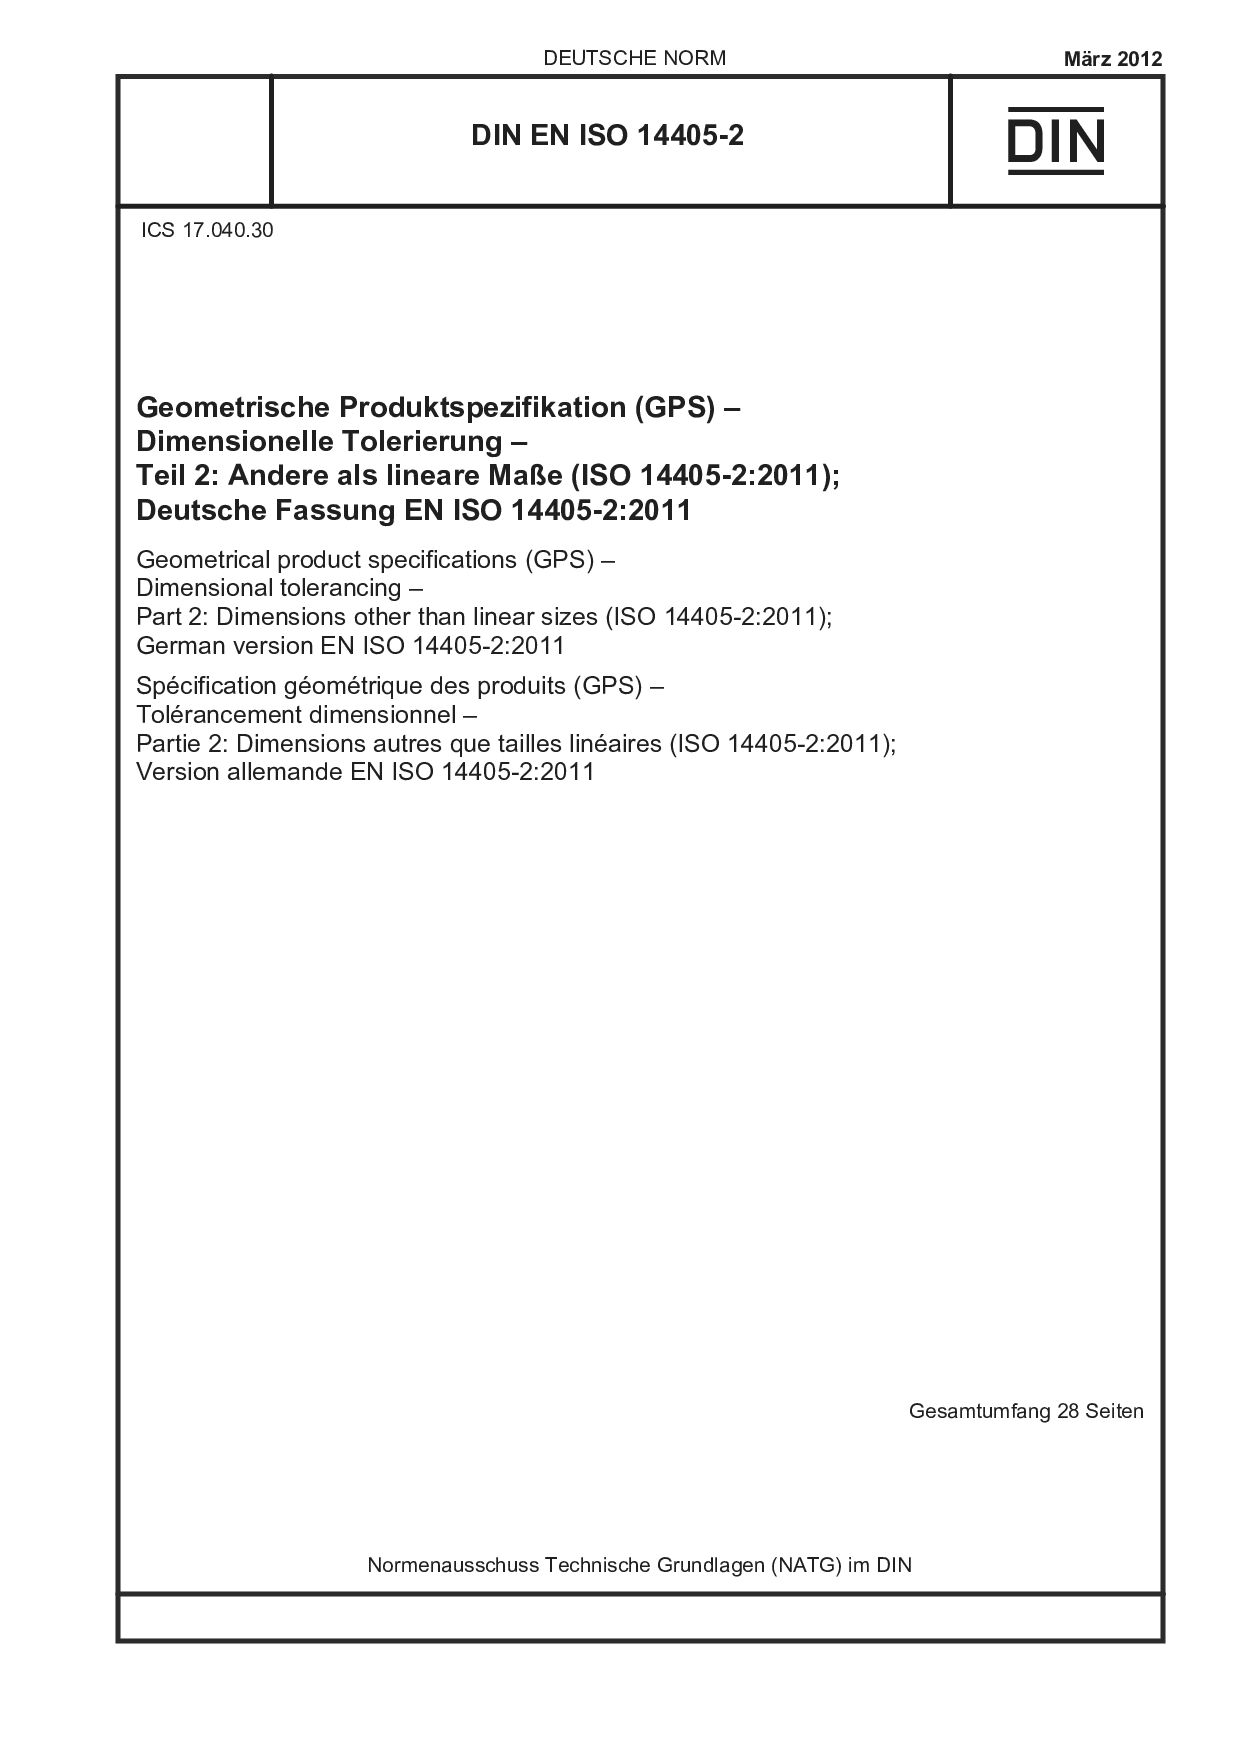 DIN EN ISO 14405-2:2012